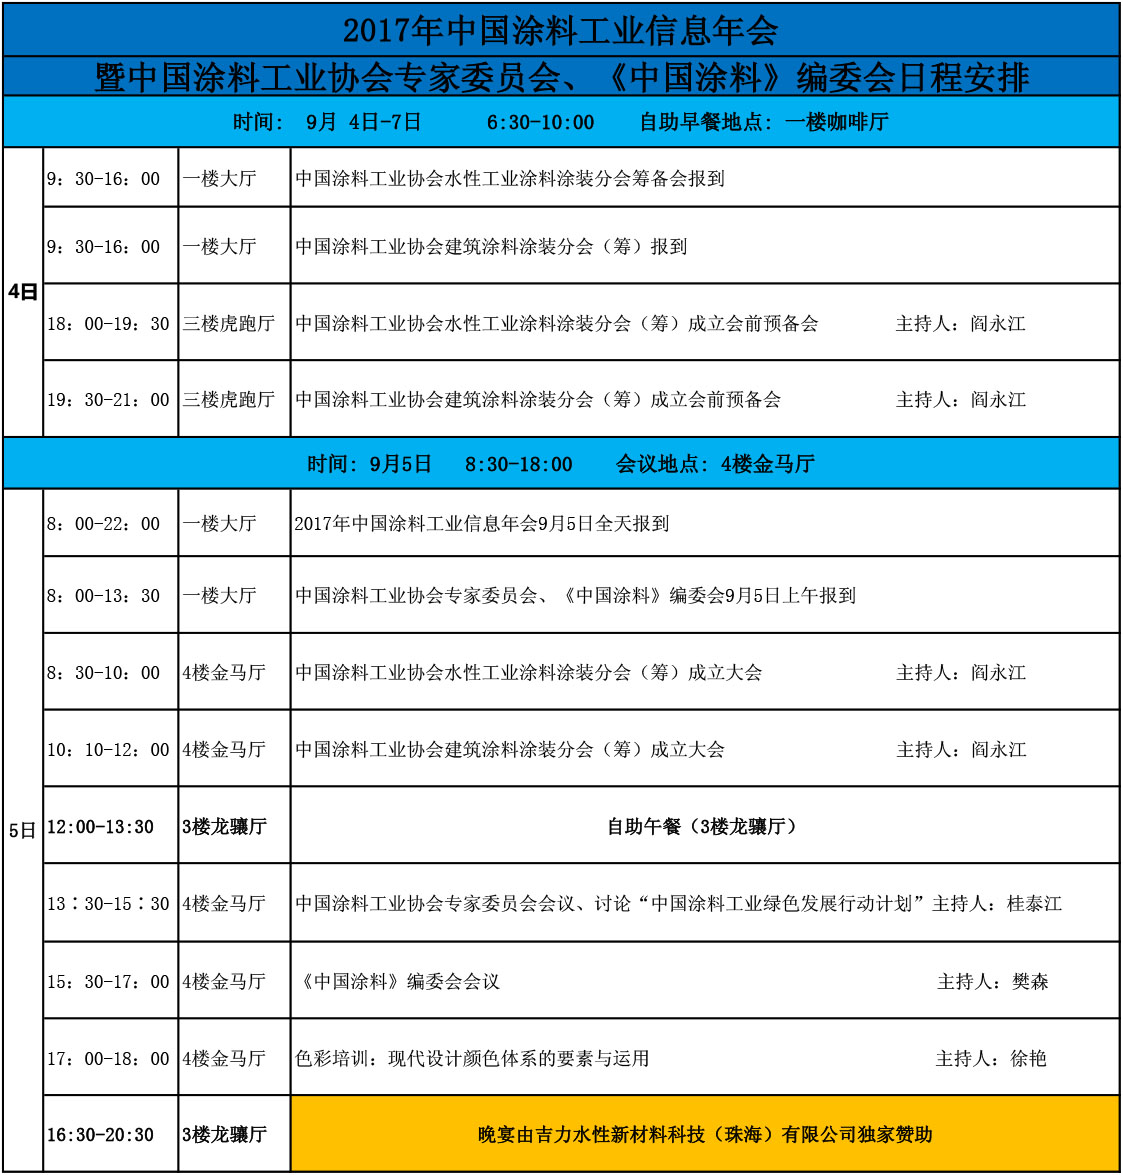 2017中国涂料工业信息年会